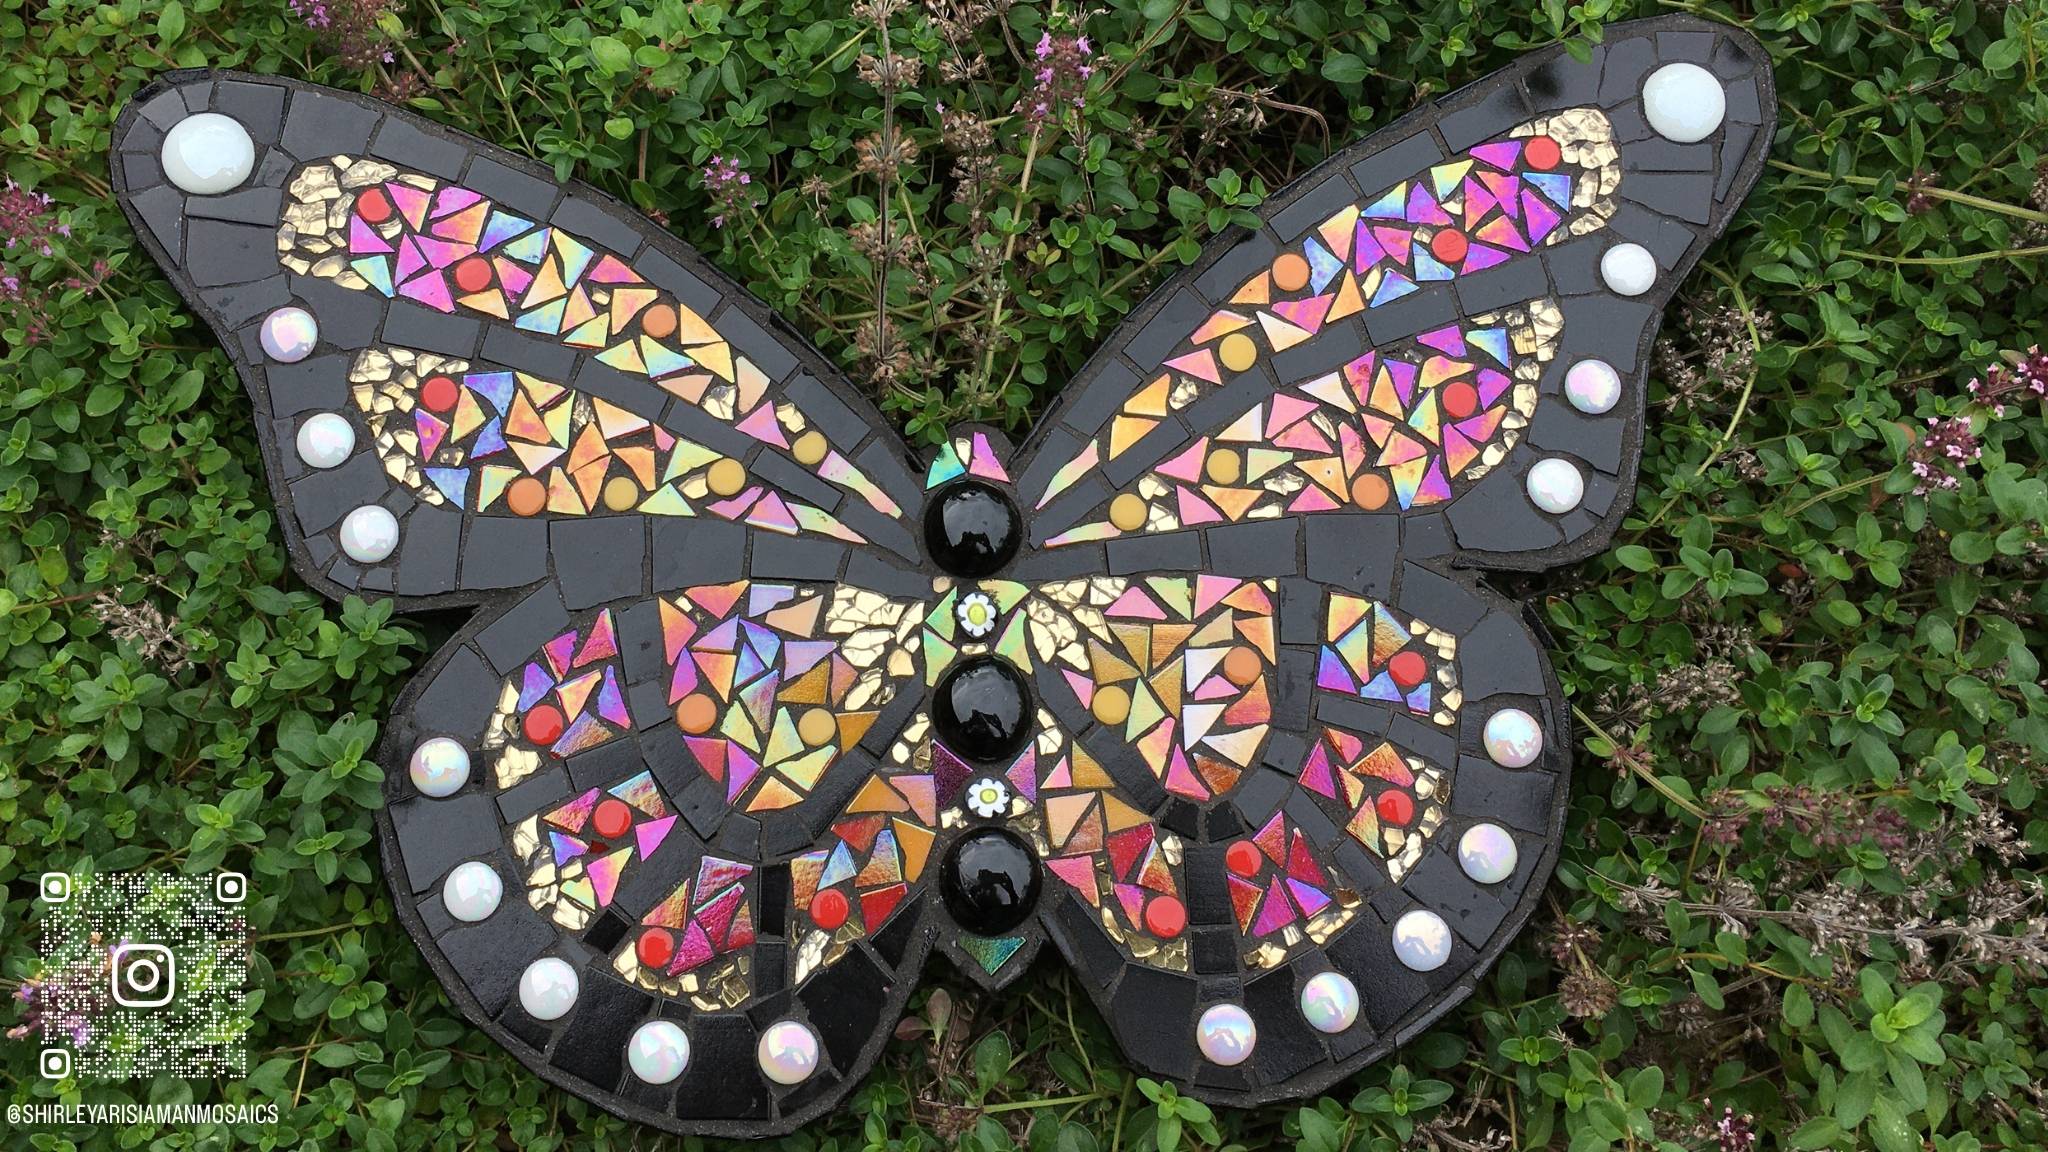 Monarda vlinder gemaakt in glasmozaiek. Gebruikte kleuren in de mozaiek zijn rood, zwart, goud en wit.